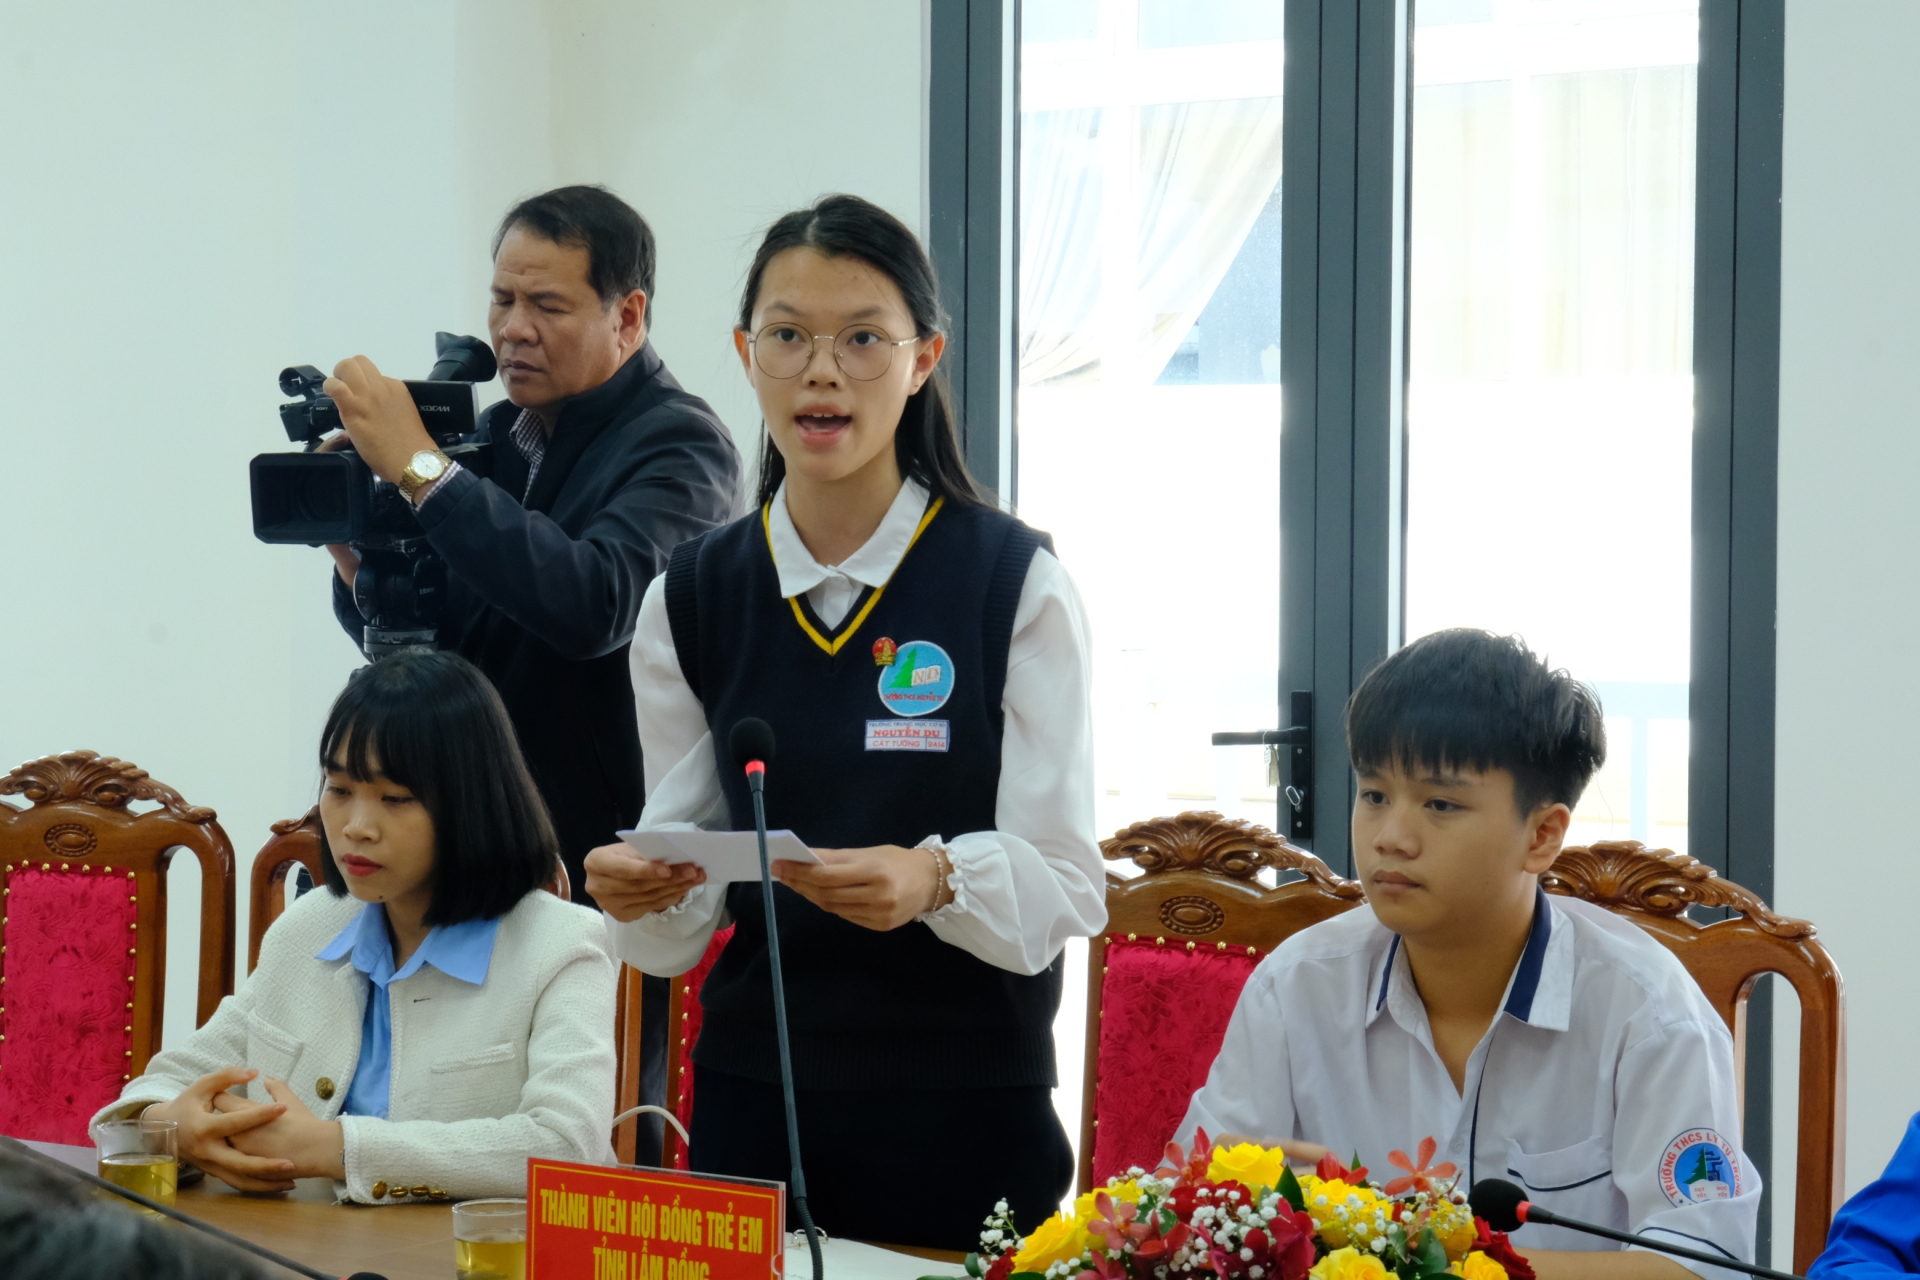 Đại biểu trẻ em của thành phố Đà Lạt đặt câu hỏi tại kỳ họp